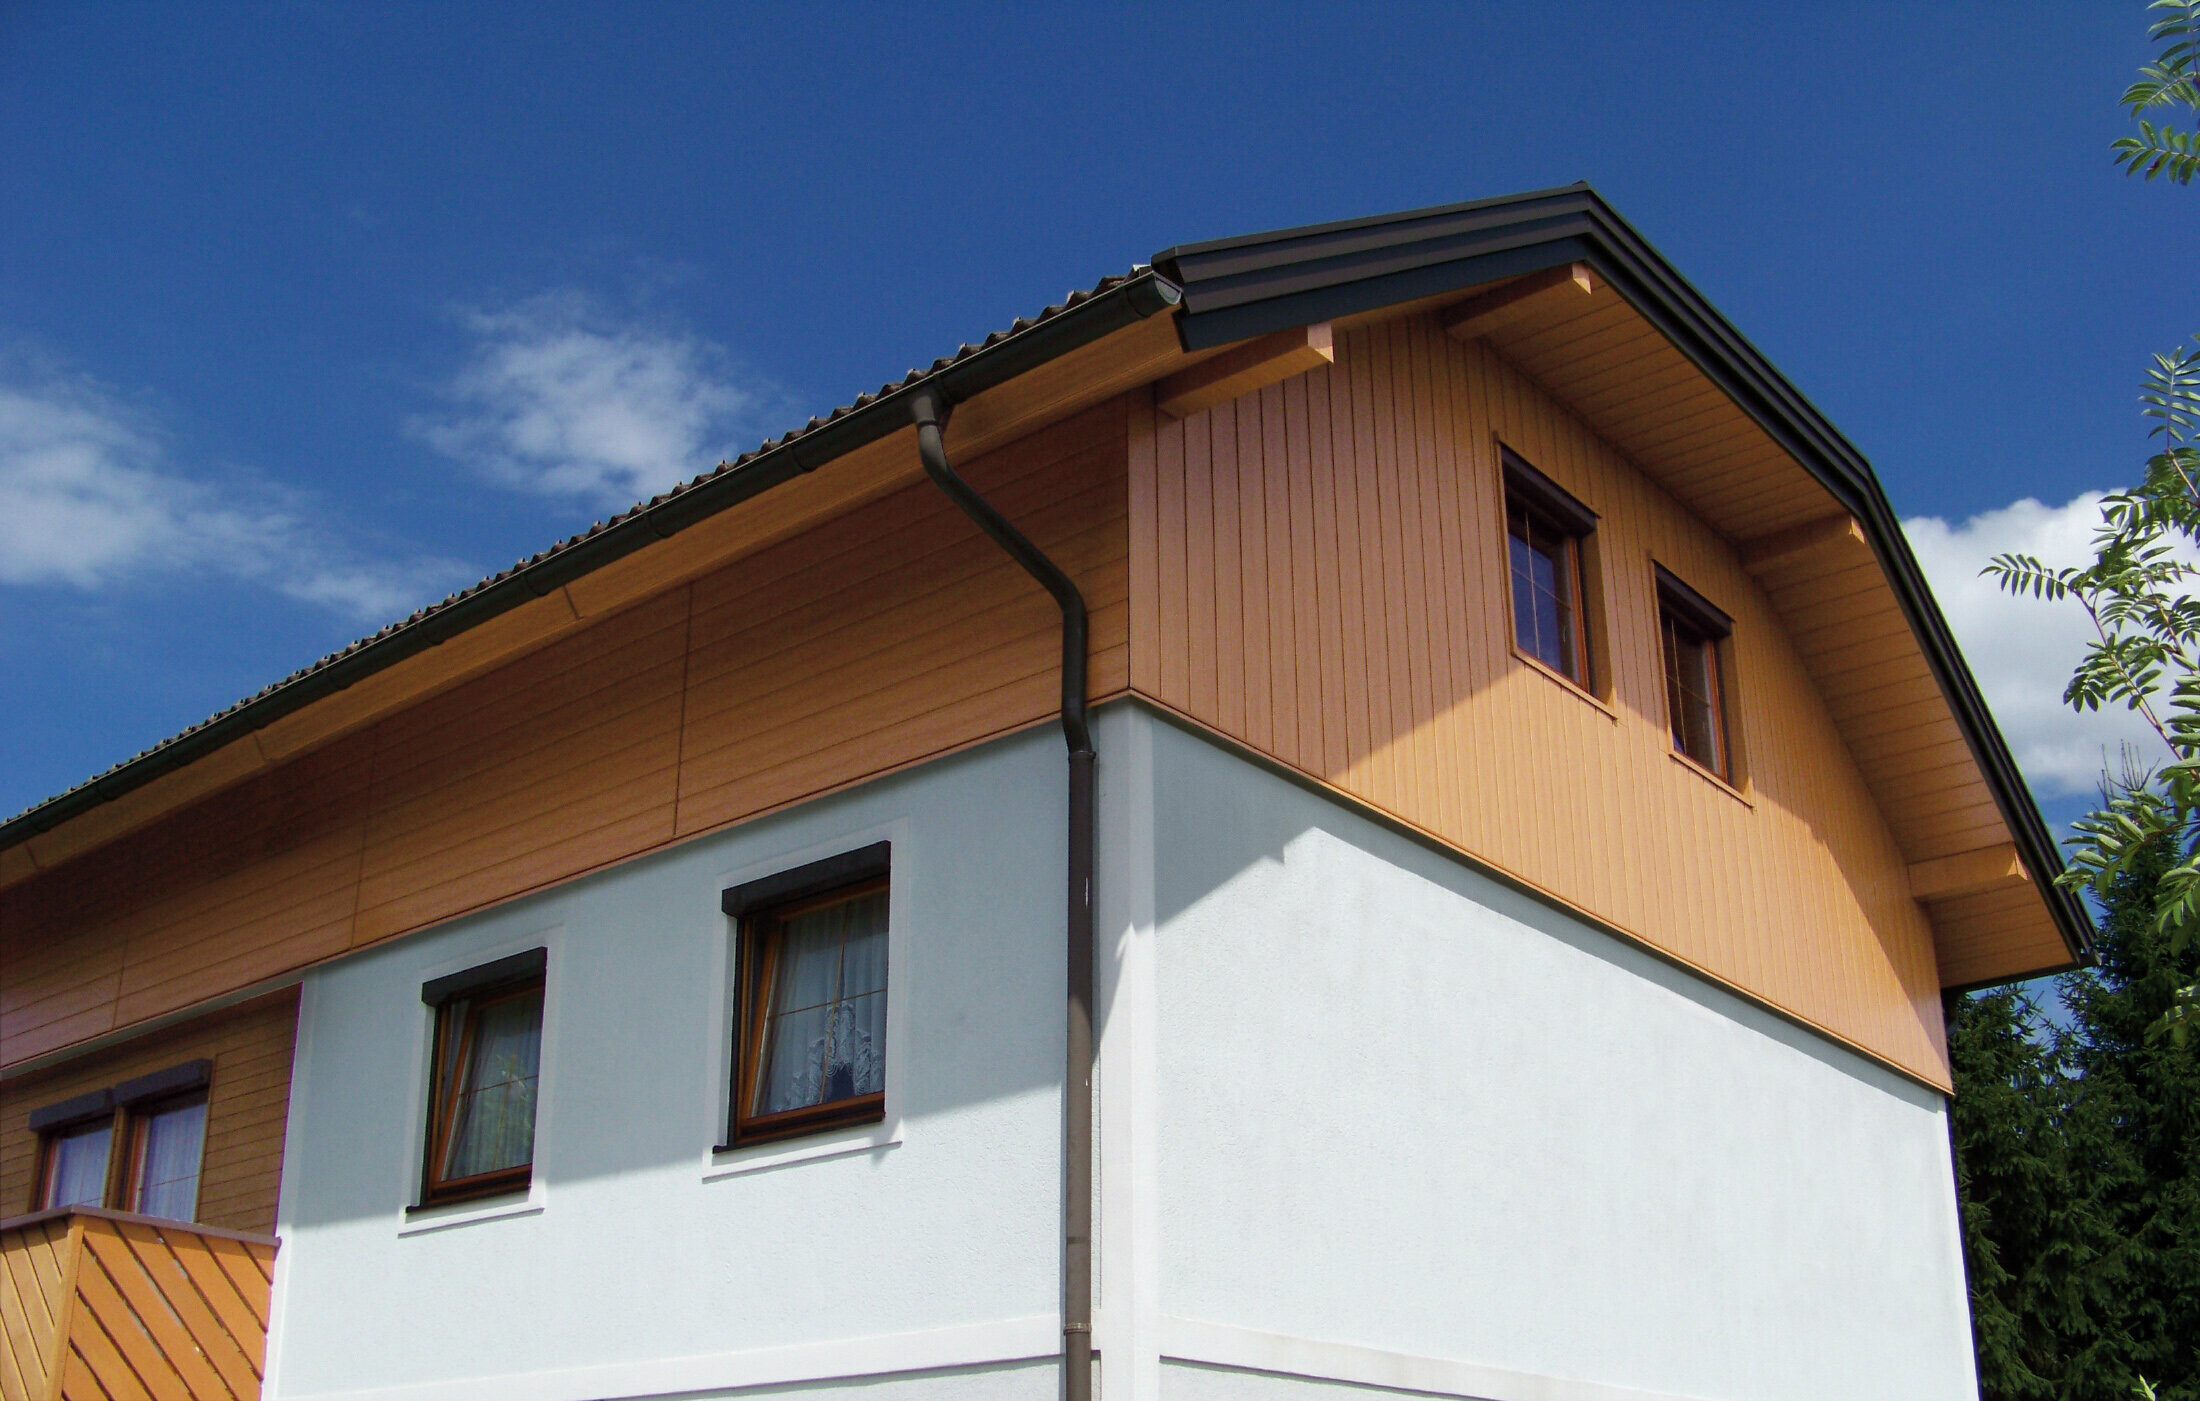 Grande maison individuelle à toit à demi-croupe et revêtement des pignons avec des Sidings PREFA imitation bois clair